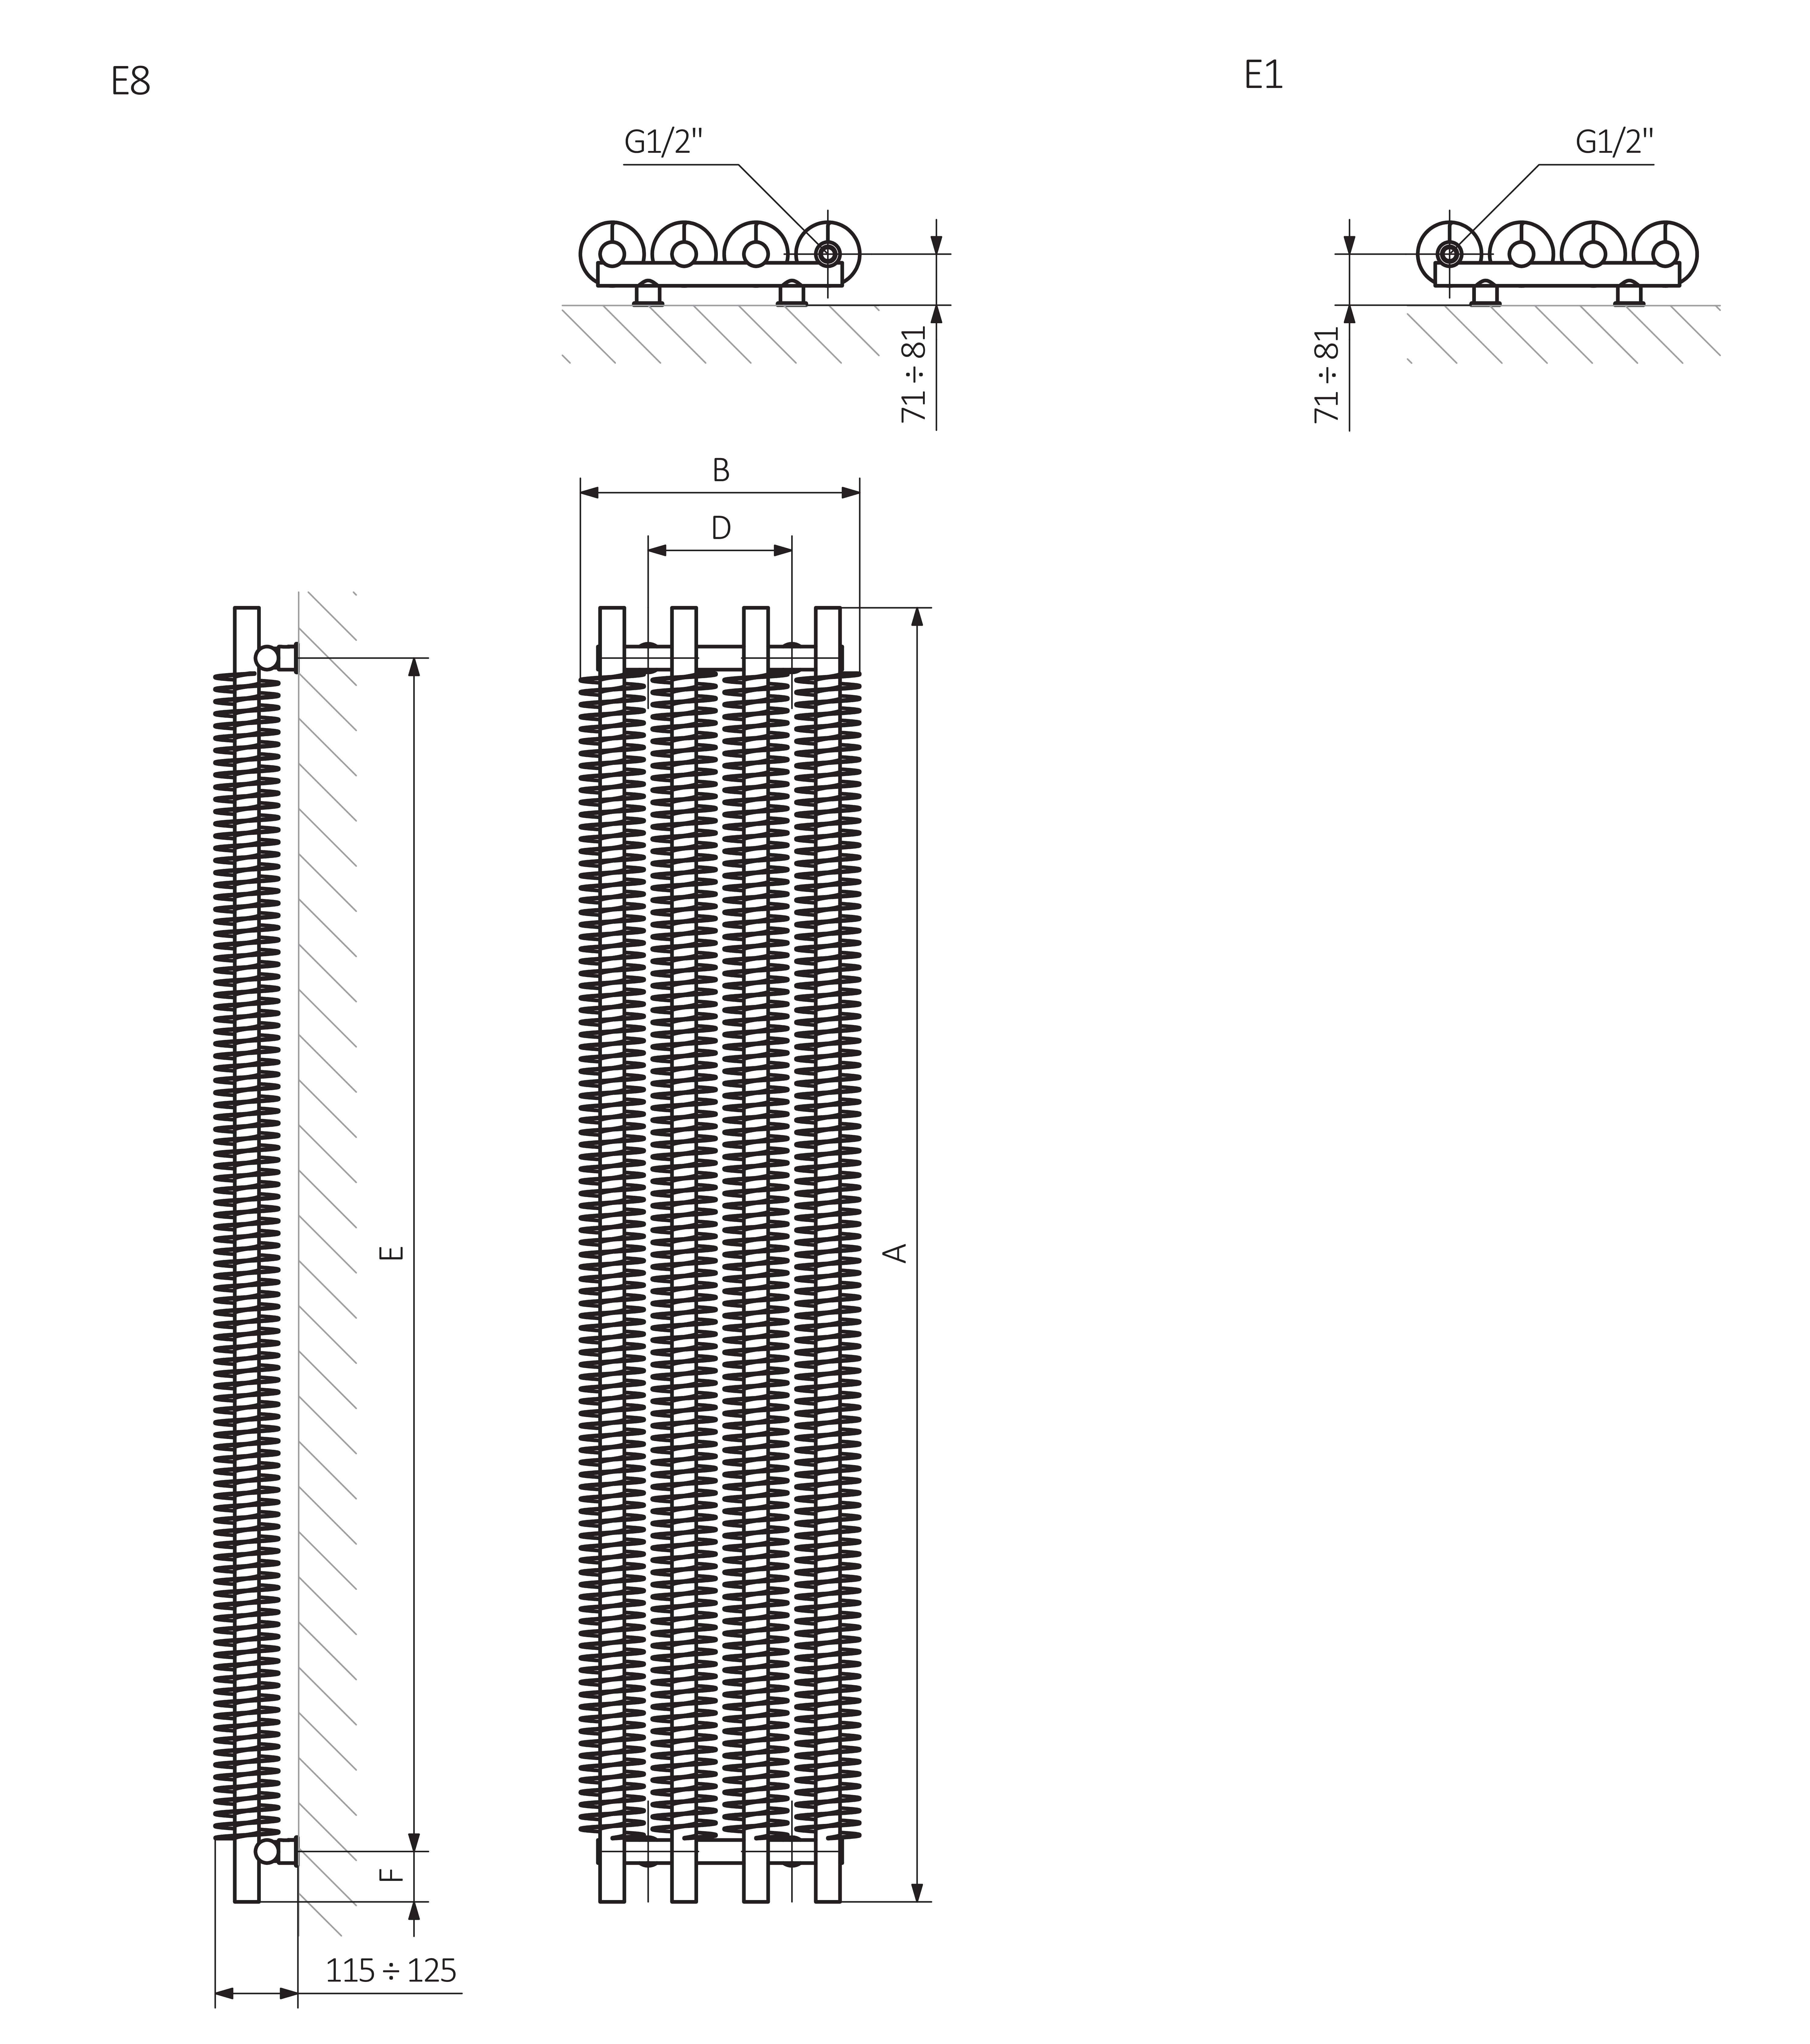 A - Výška B - Šířka C1-C5 - Vzdálenost mezi přípojkami D - Vzdálenost mezi držáky ve vodorovném směru E - Vzdálenost vertikálních prvků ve svislé poloze F - Vzdálenost od spodní osy spojovacích prvků ke spodnímu okraji kolektoru
